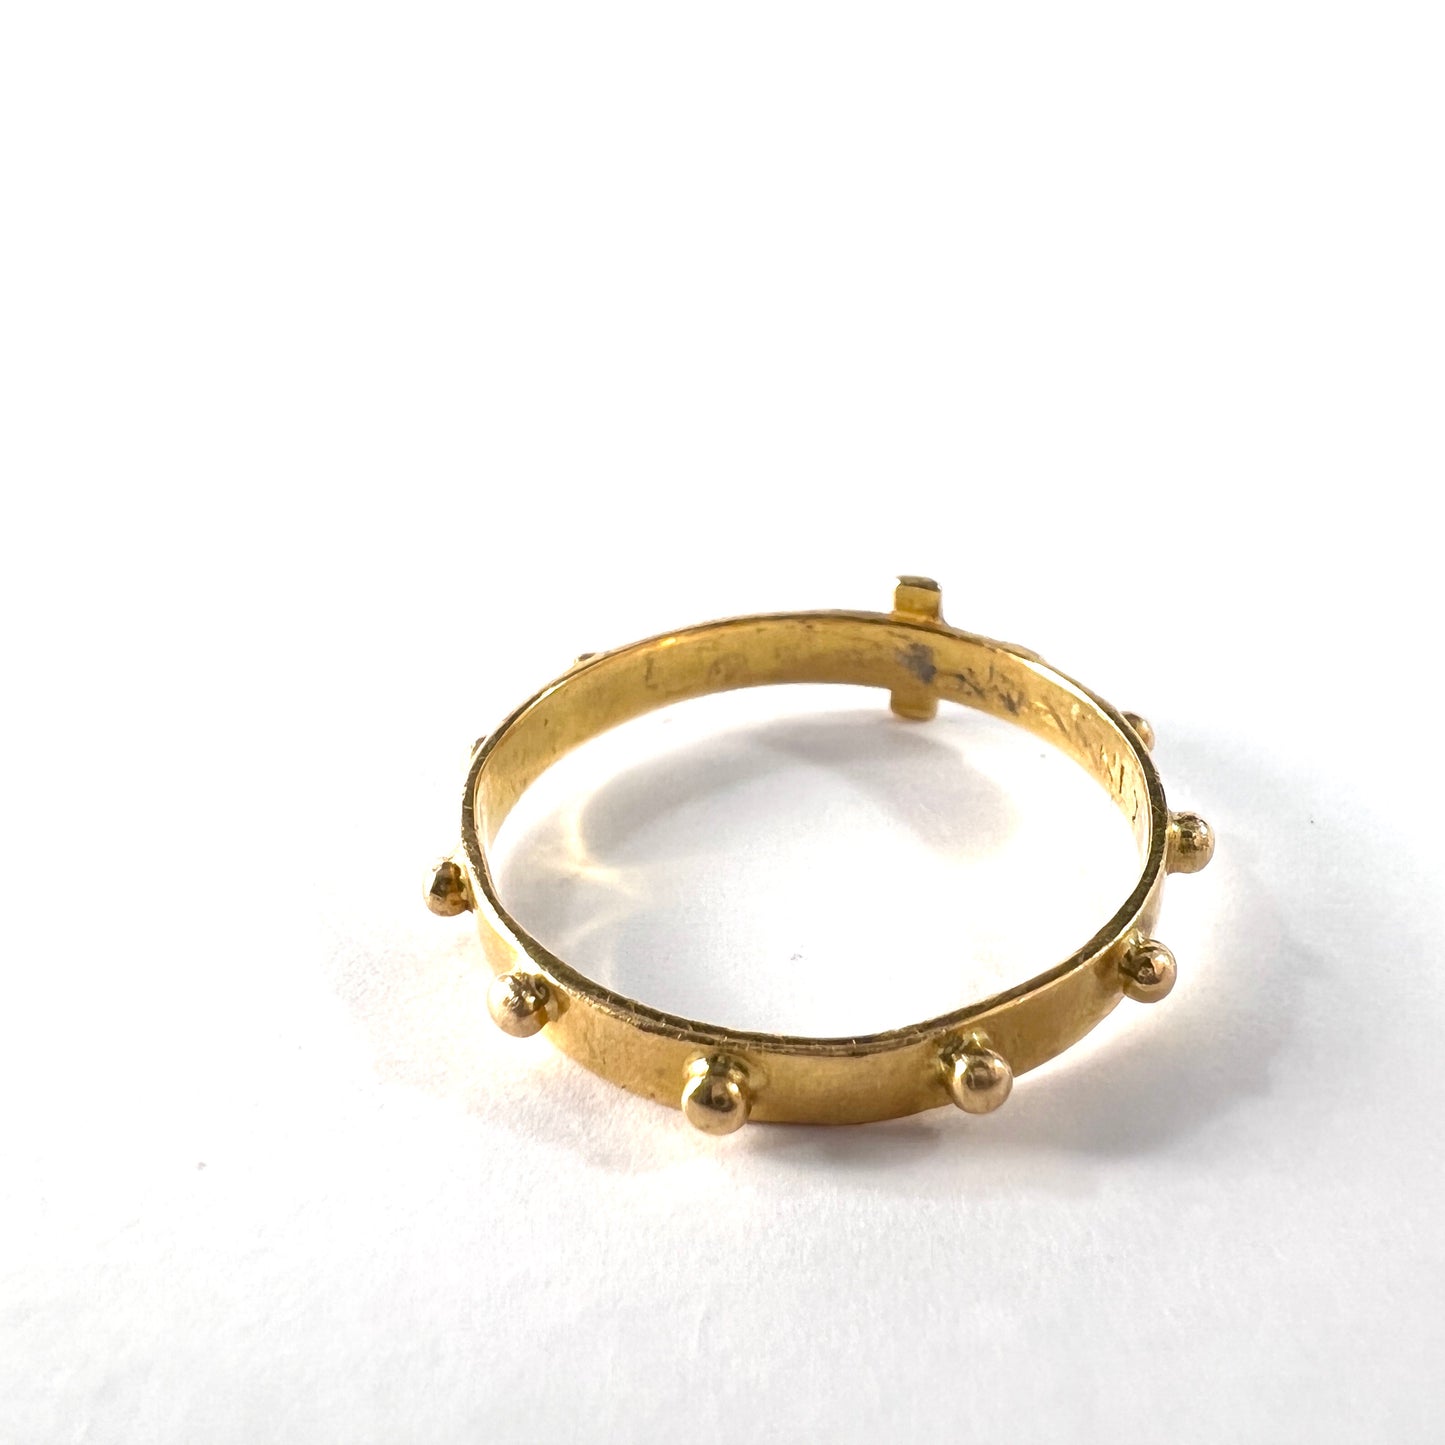 Vintage or Antique 18k Gold Cross Ring.